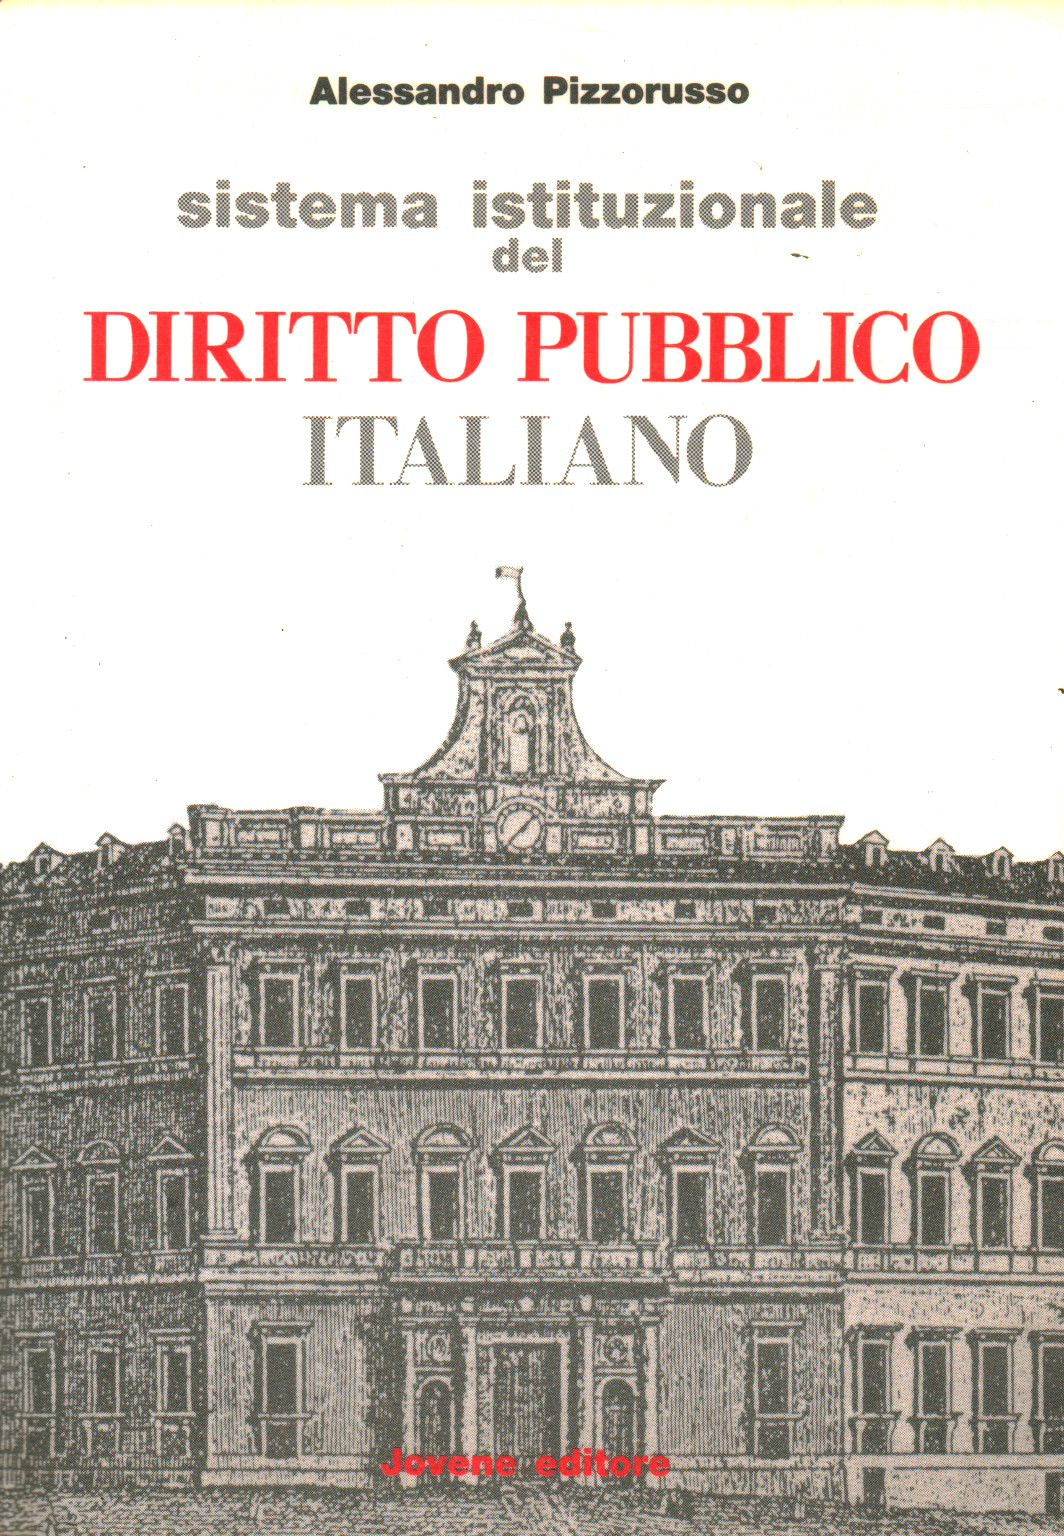 Sistema istituzionale del diritto pubblico italian, s.a.